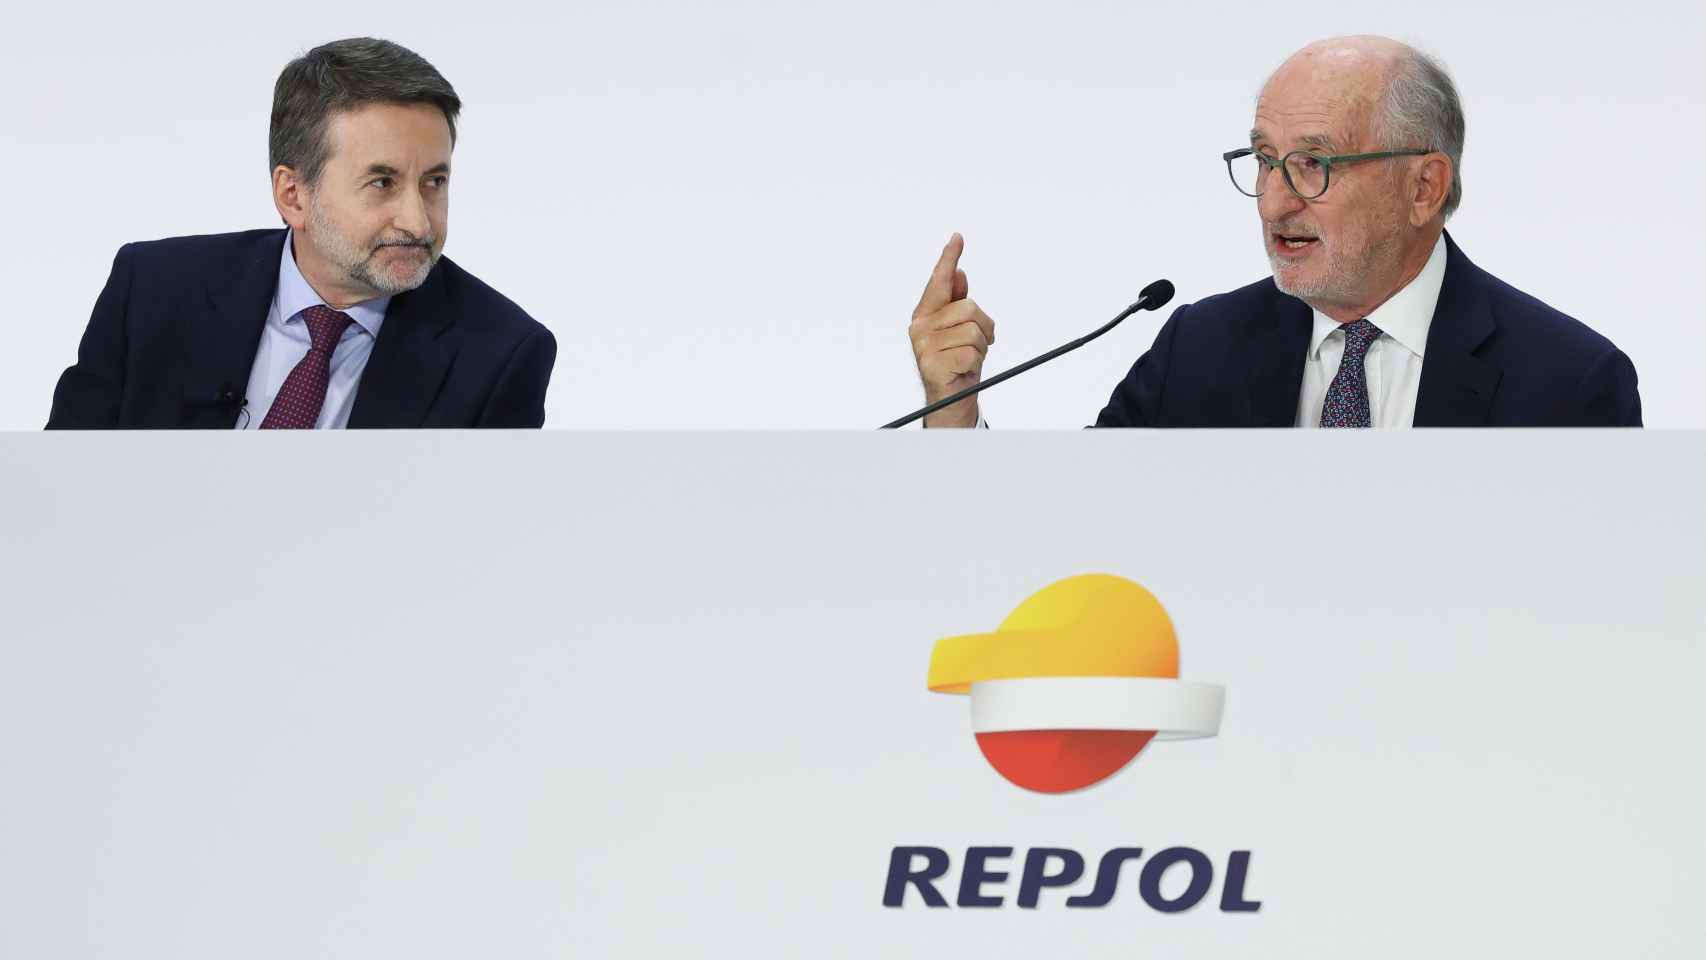 El consejero delegado de Repsol, Josu Jon Imaz (izq.), y el presidente, Antonio Brufau